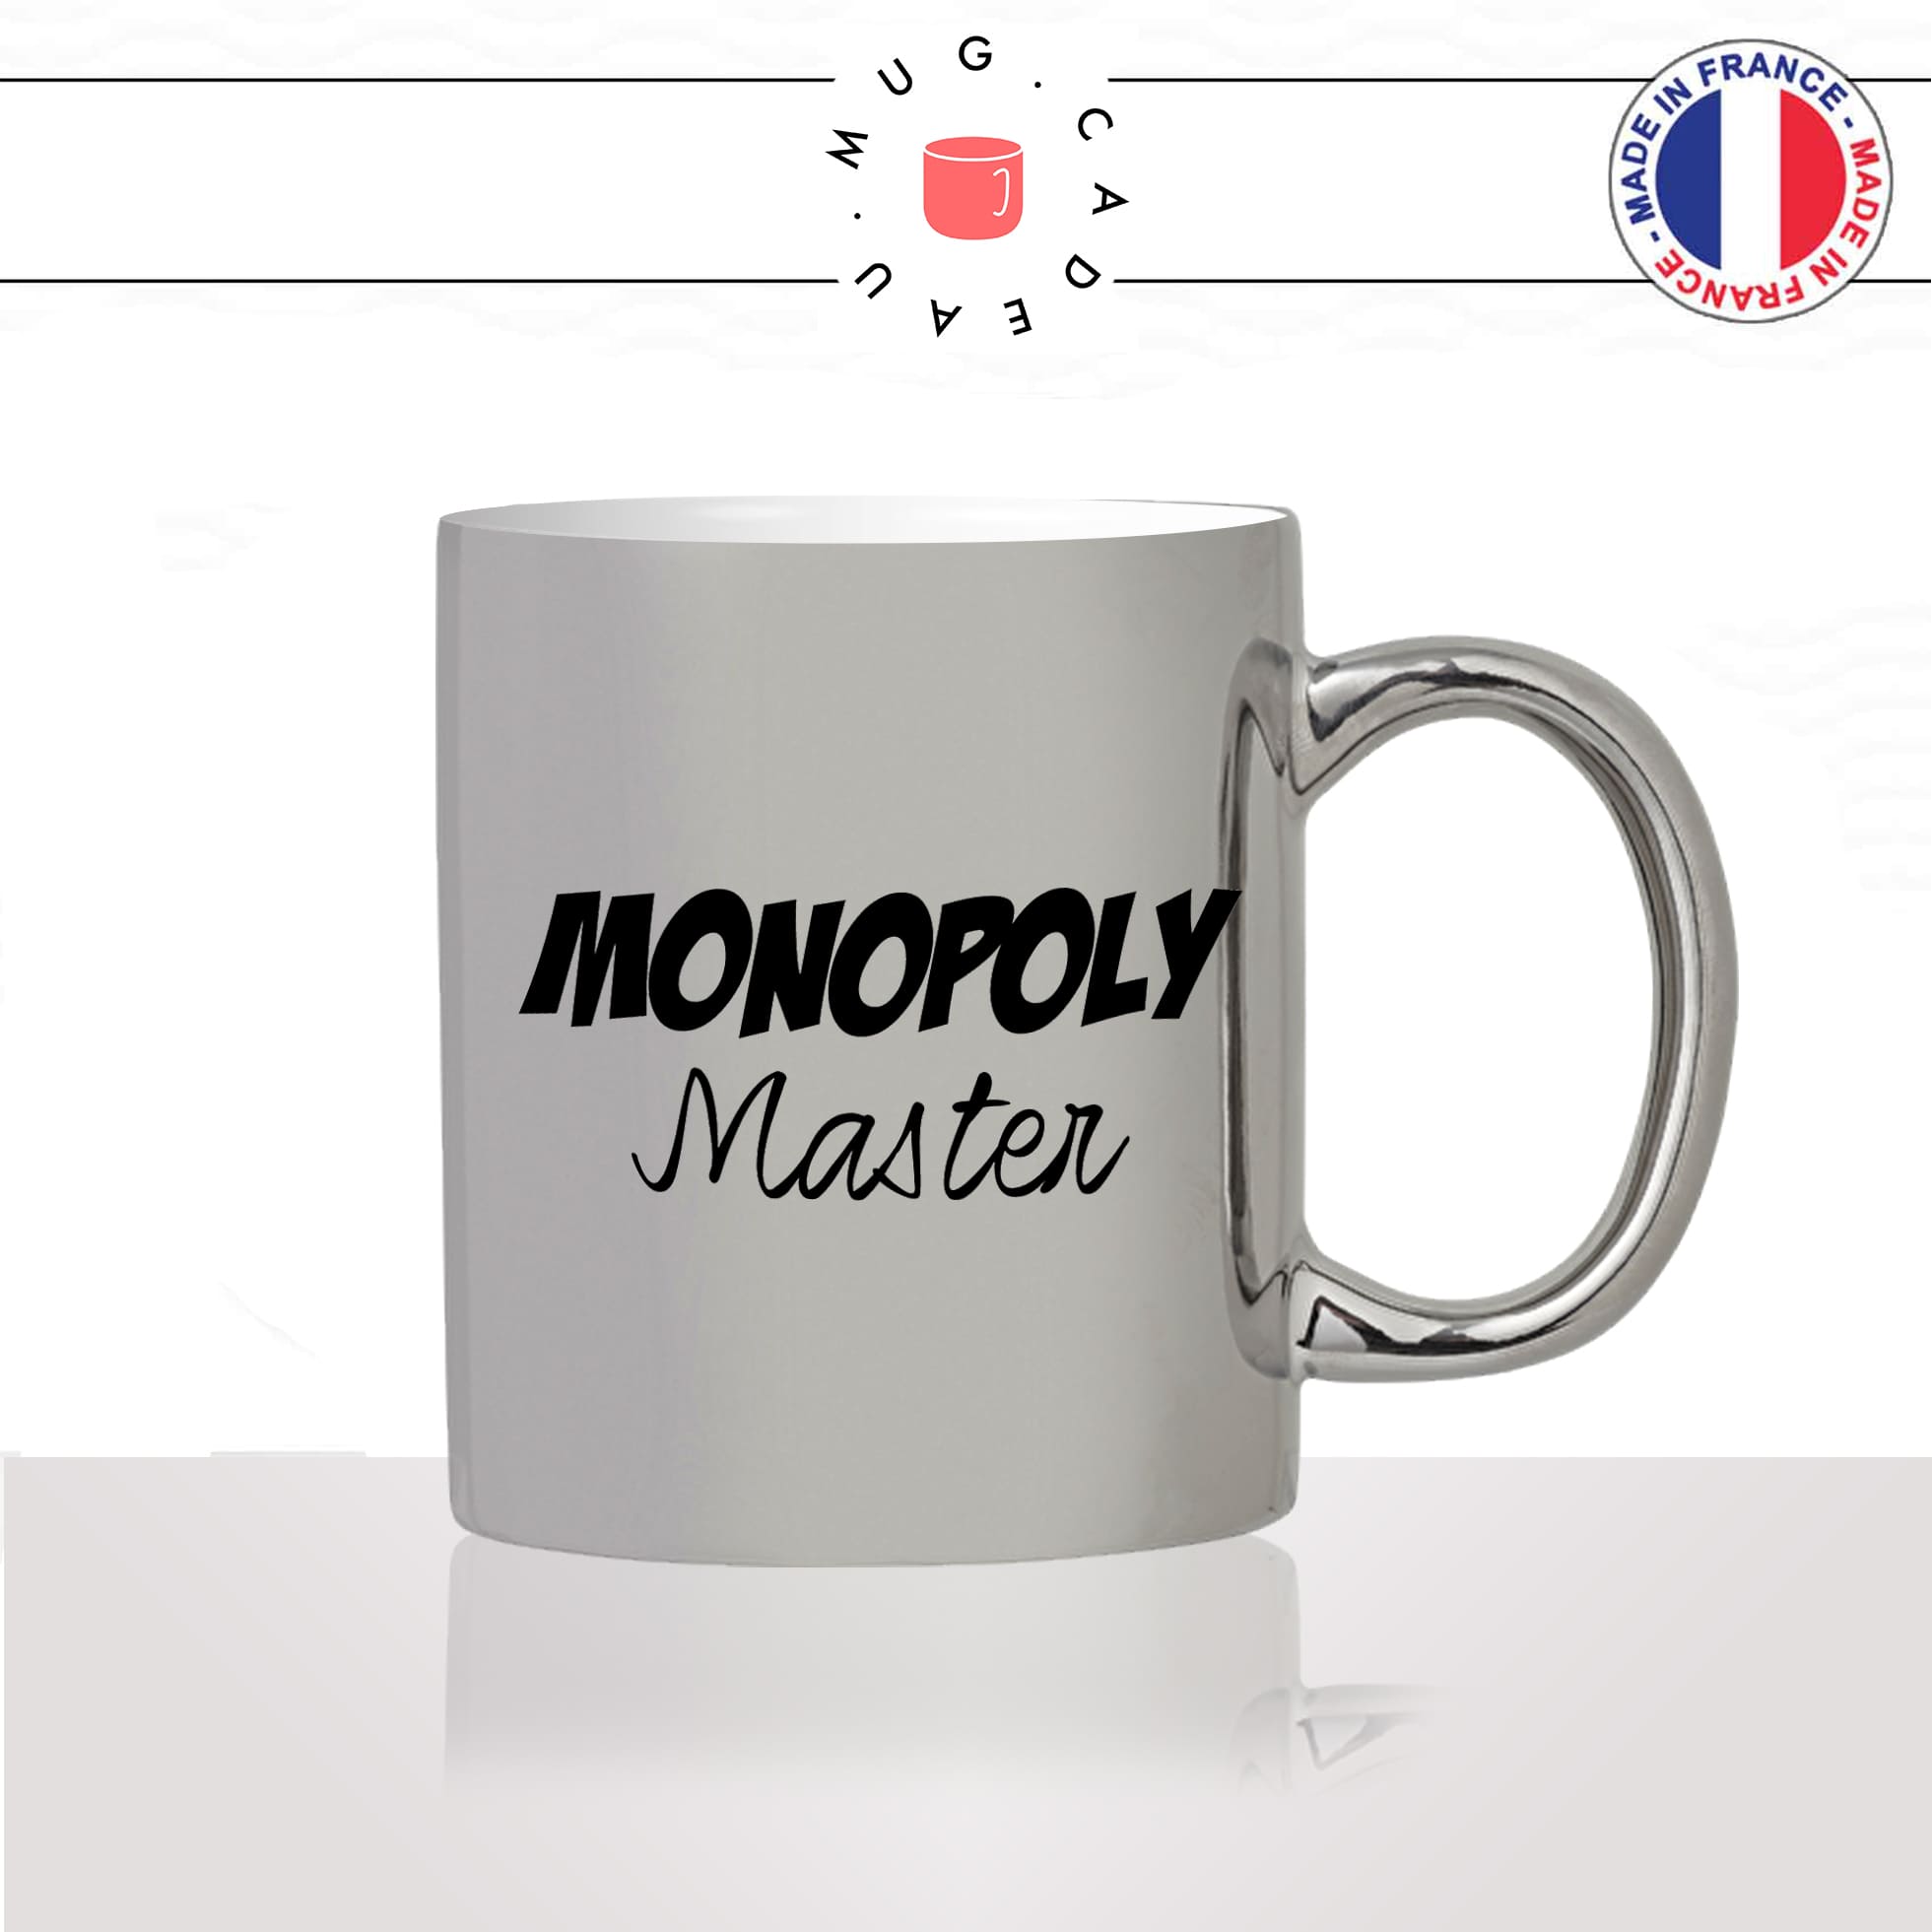 mug-tasse-argenté-argent-gris-silver-monopoly-master-maitre-jeux-de-société-famille-homme-femme-humour-fun-cool-idée-cadeau-original2